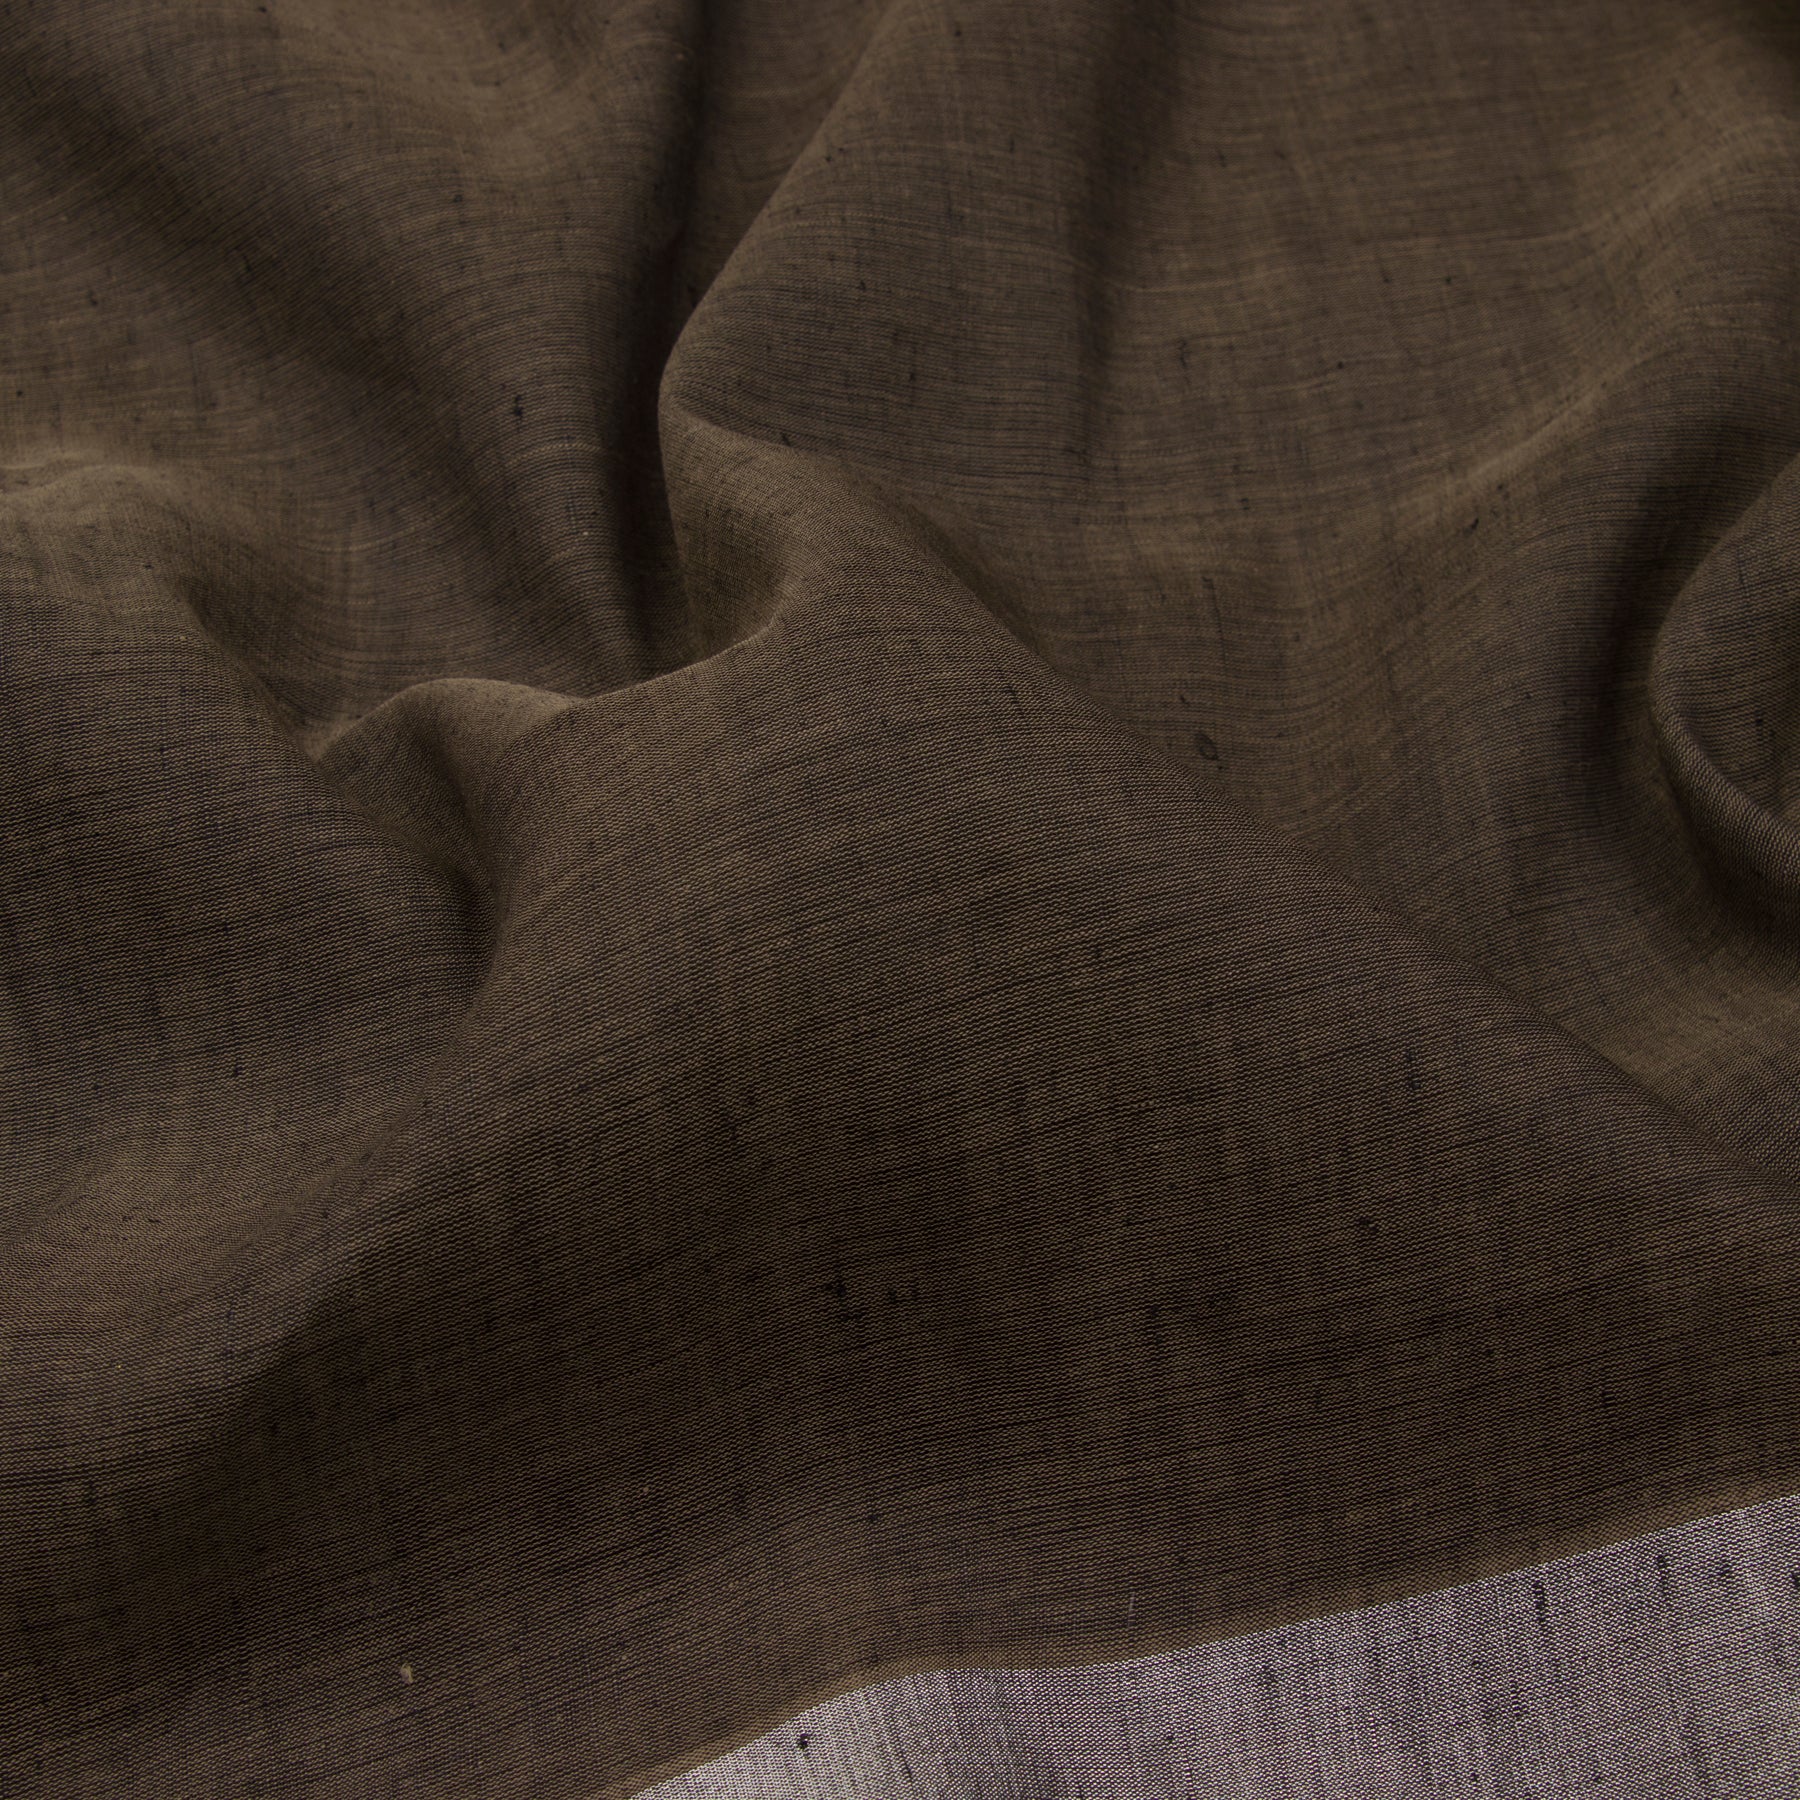 Pradeep Pillai Linen/Cotton Sari 23-008-HS004-00532 - Fabric View